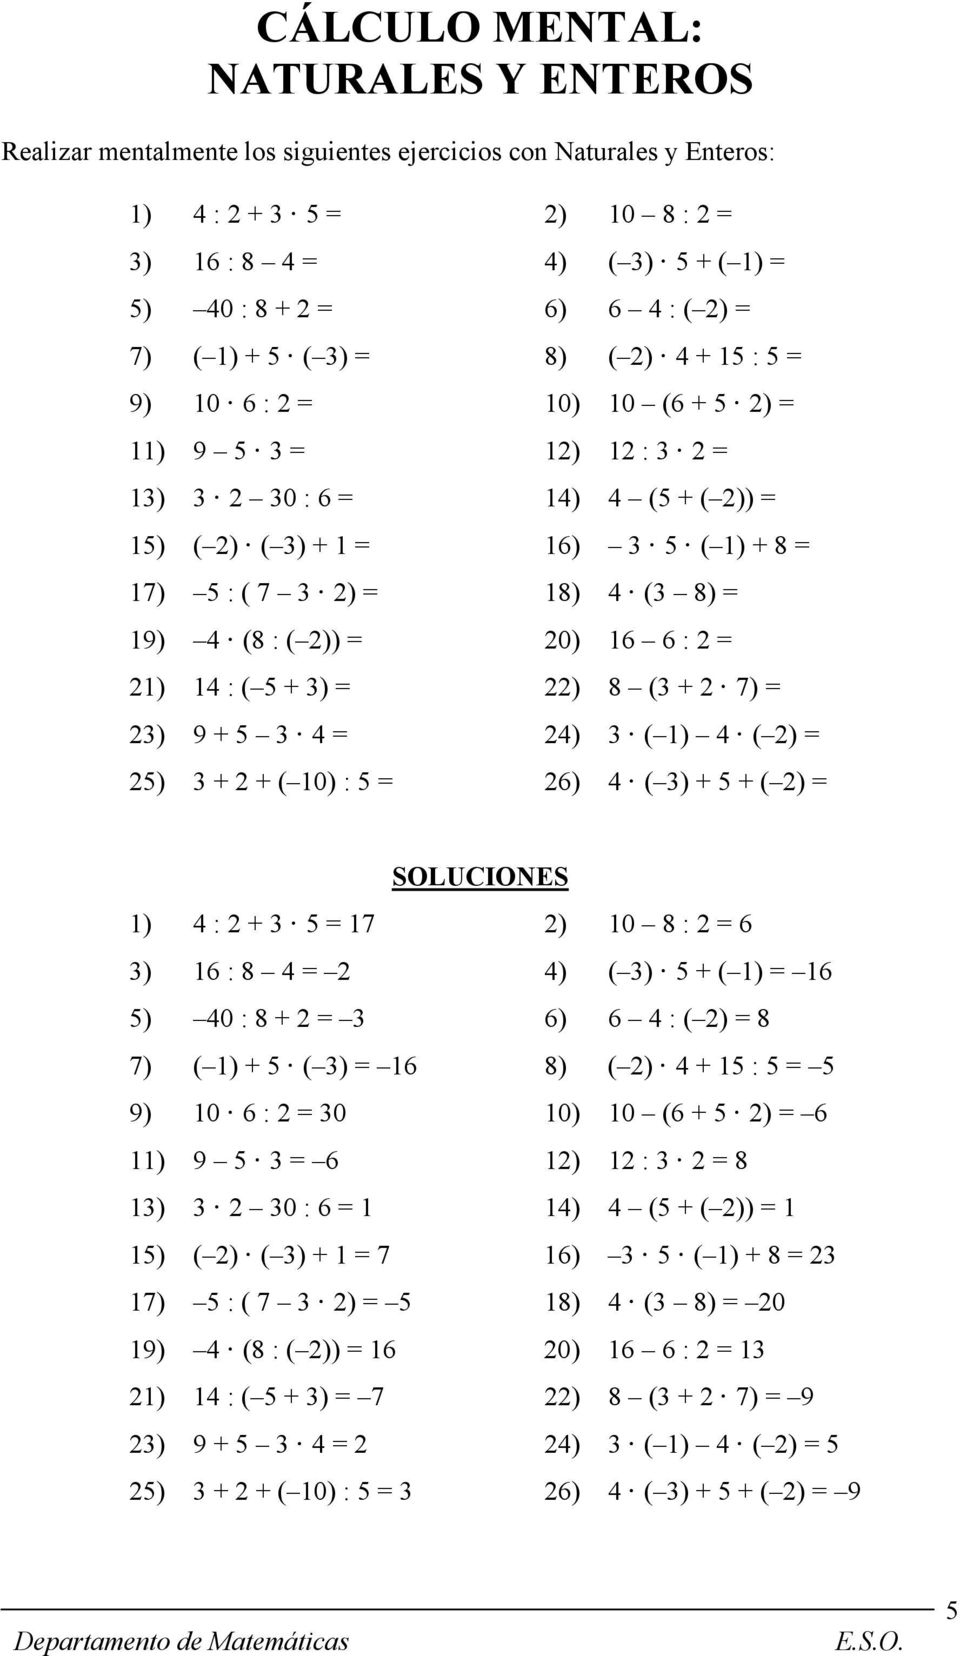 18) 4 (3 8) = 19) 4 (8 : ( 2)) = 20) 16 6 : 2 = 21) 14 : ( 5 + 3) = 22) 8 (3 + 2 7) = 23) 9 + 5 3 4 = 24) 3 ( 1) 4 ( 2) = 25) 3 + 2 + ( 10) : 5 = 26) 4 ( 3) + 5 + ( 2) = SOLUCIONES 1) 4 : 2 + 3 5 =